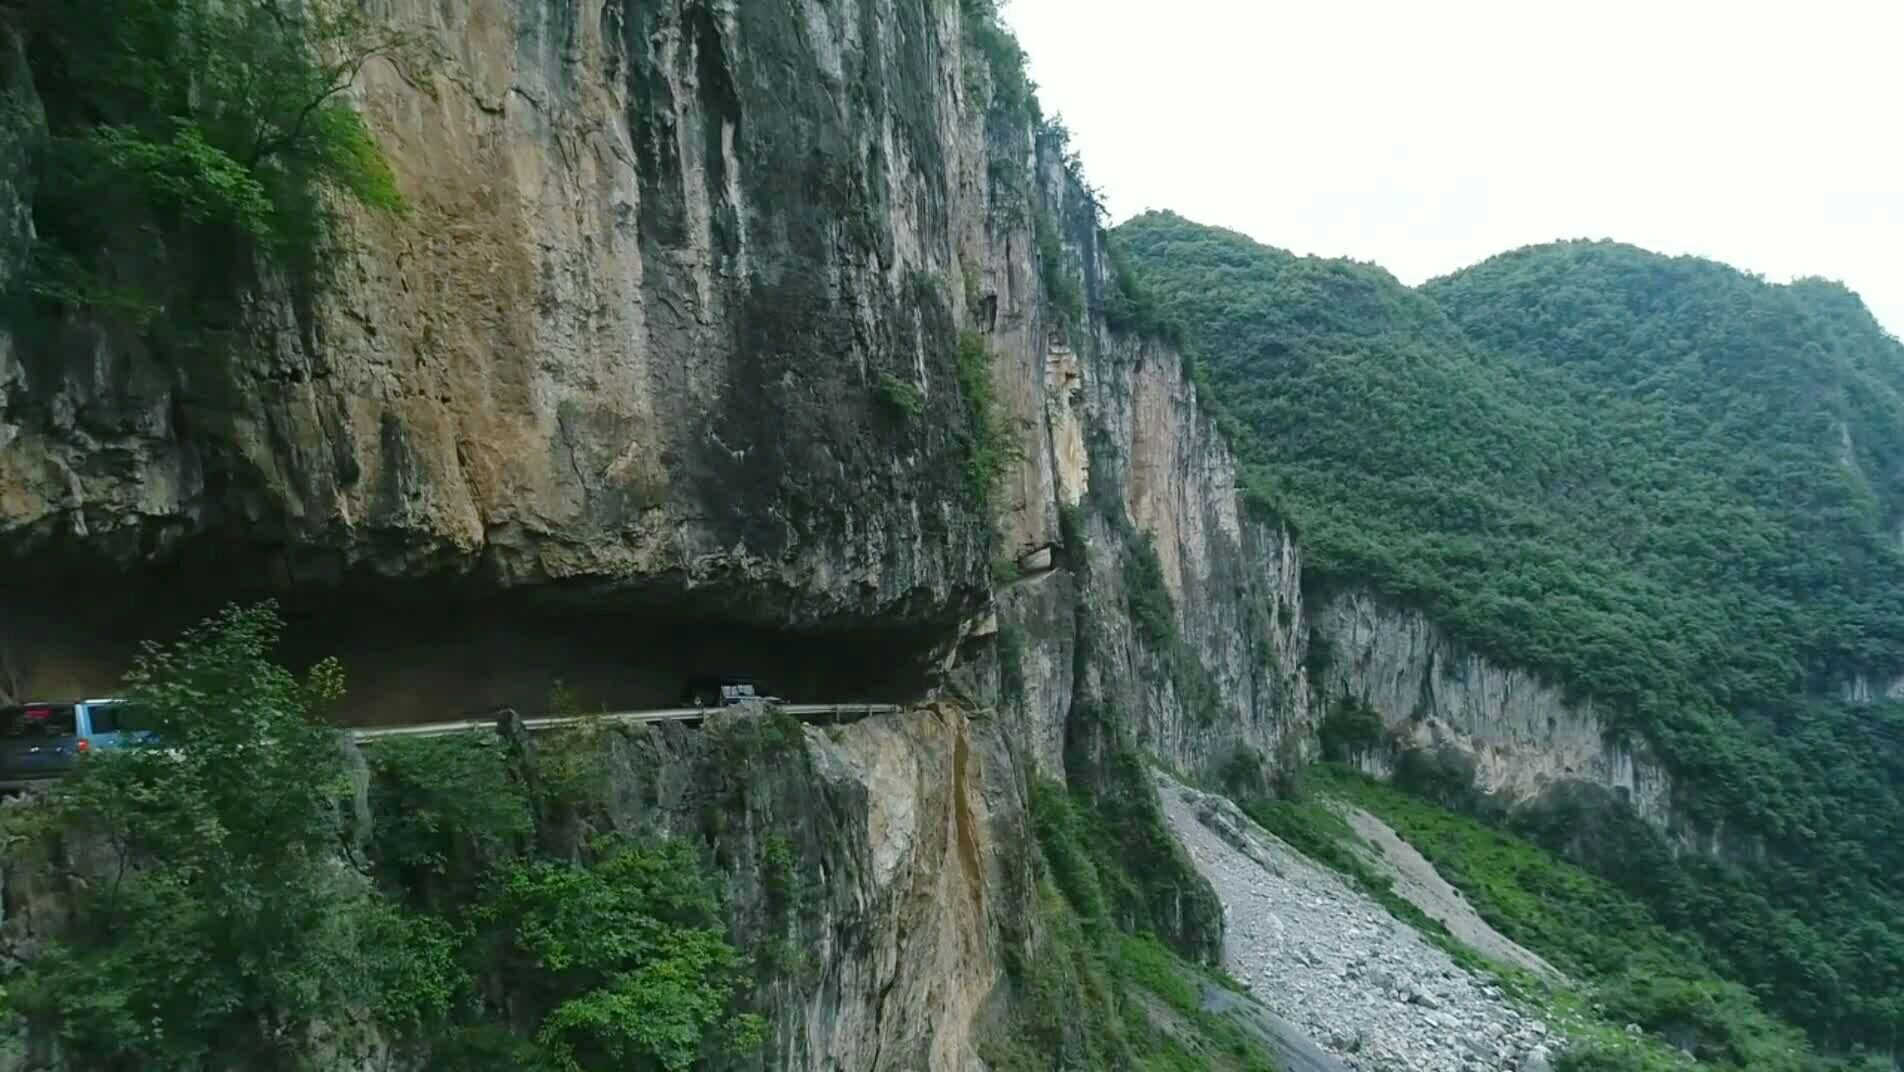 贵州挂壁公路图片